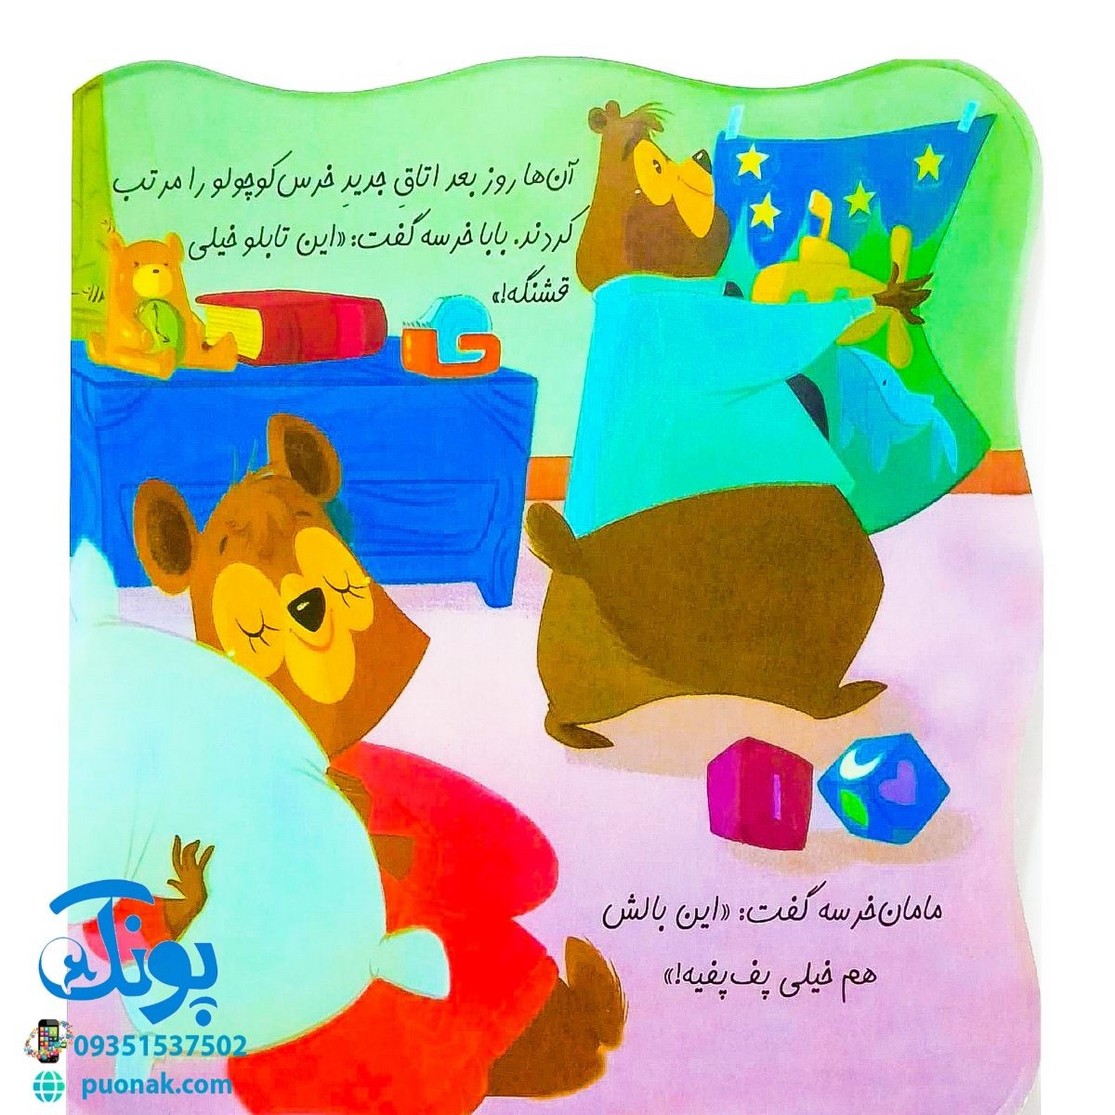 کتاب تخت خواب بزرگ برای برای خرس کوچولو (مجموعه کتاب های خودم می توانم)